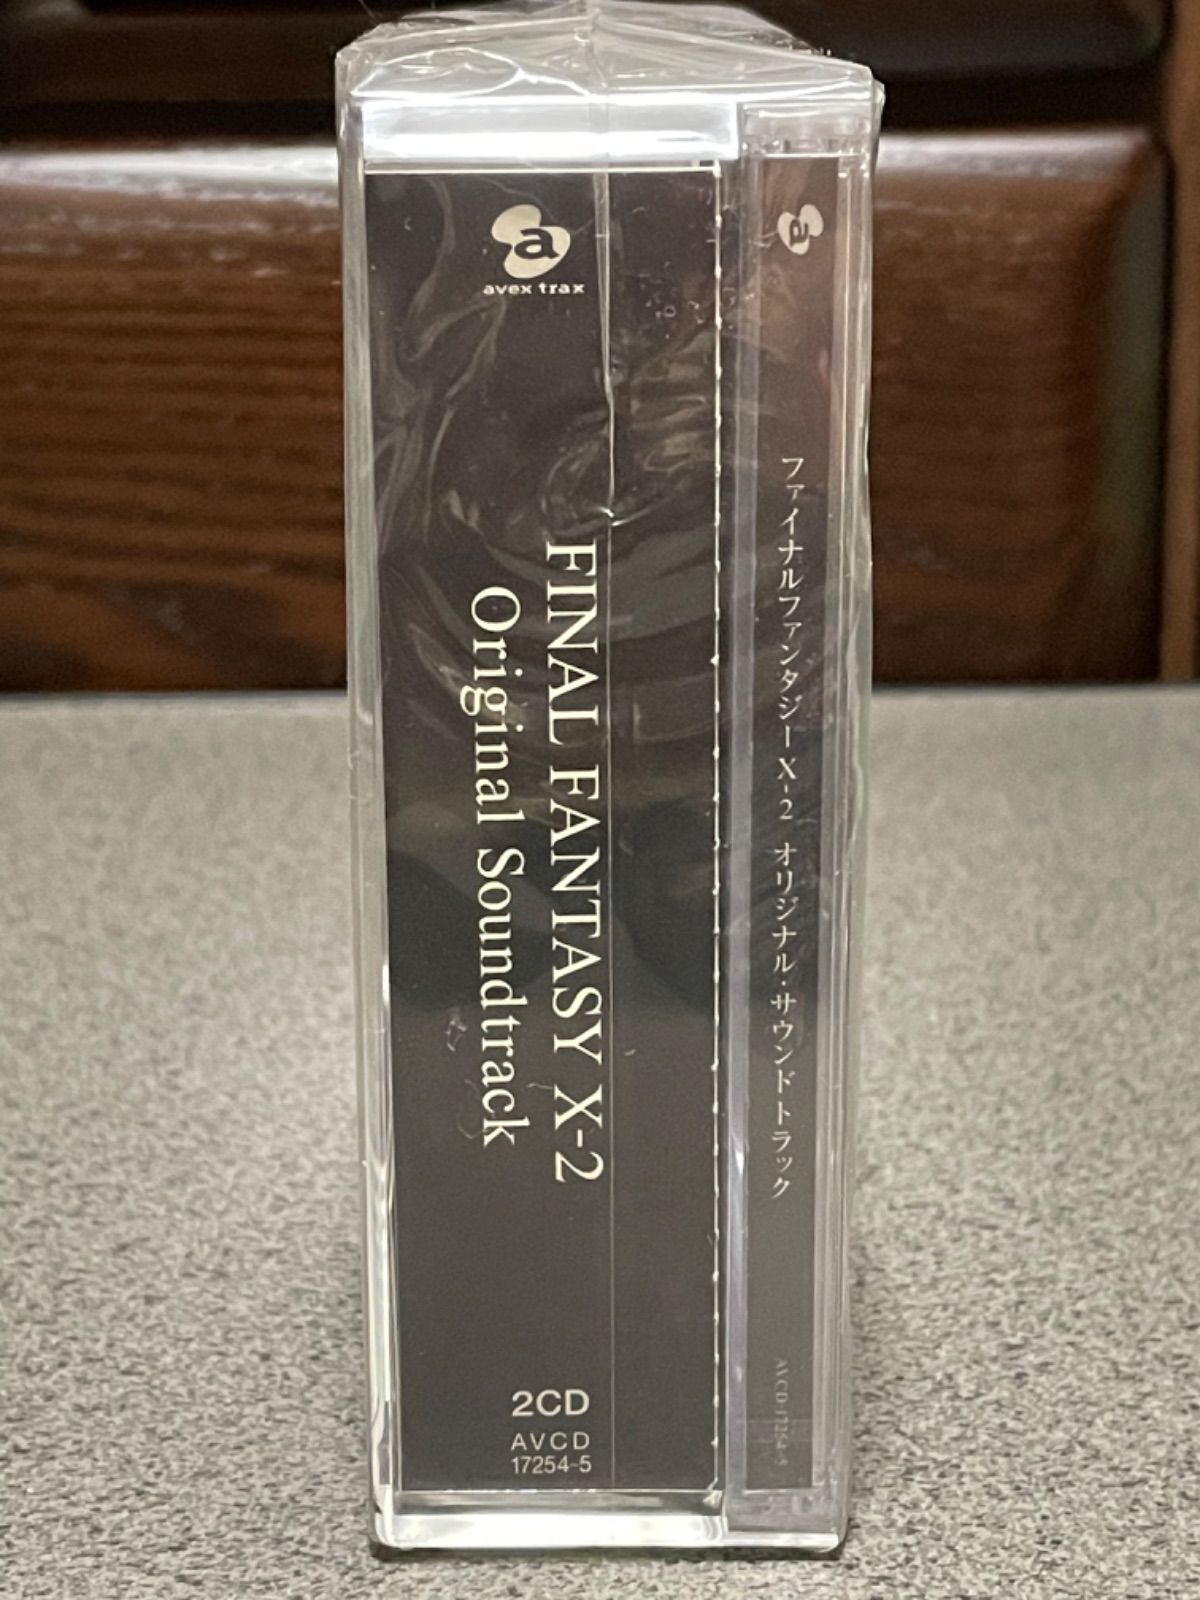 ファイナルファンタジー10-2 オリジナルサウンドトラック初回限定版 新品未開封 - メルカリ